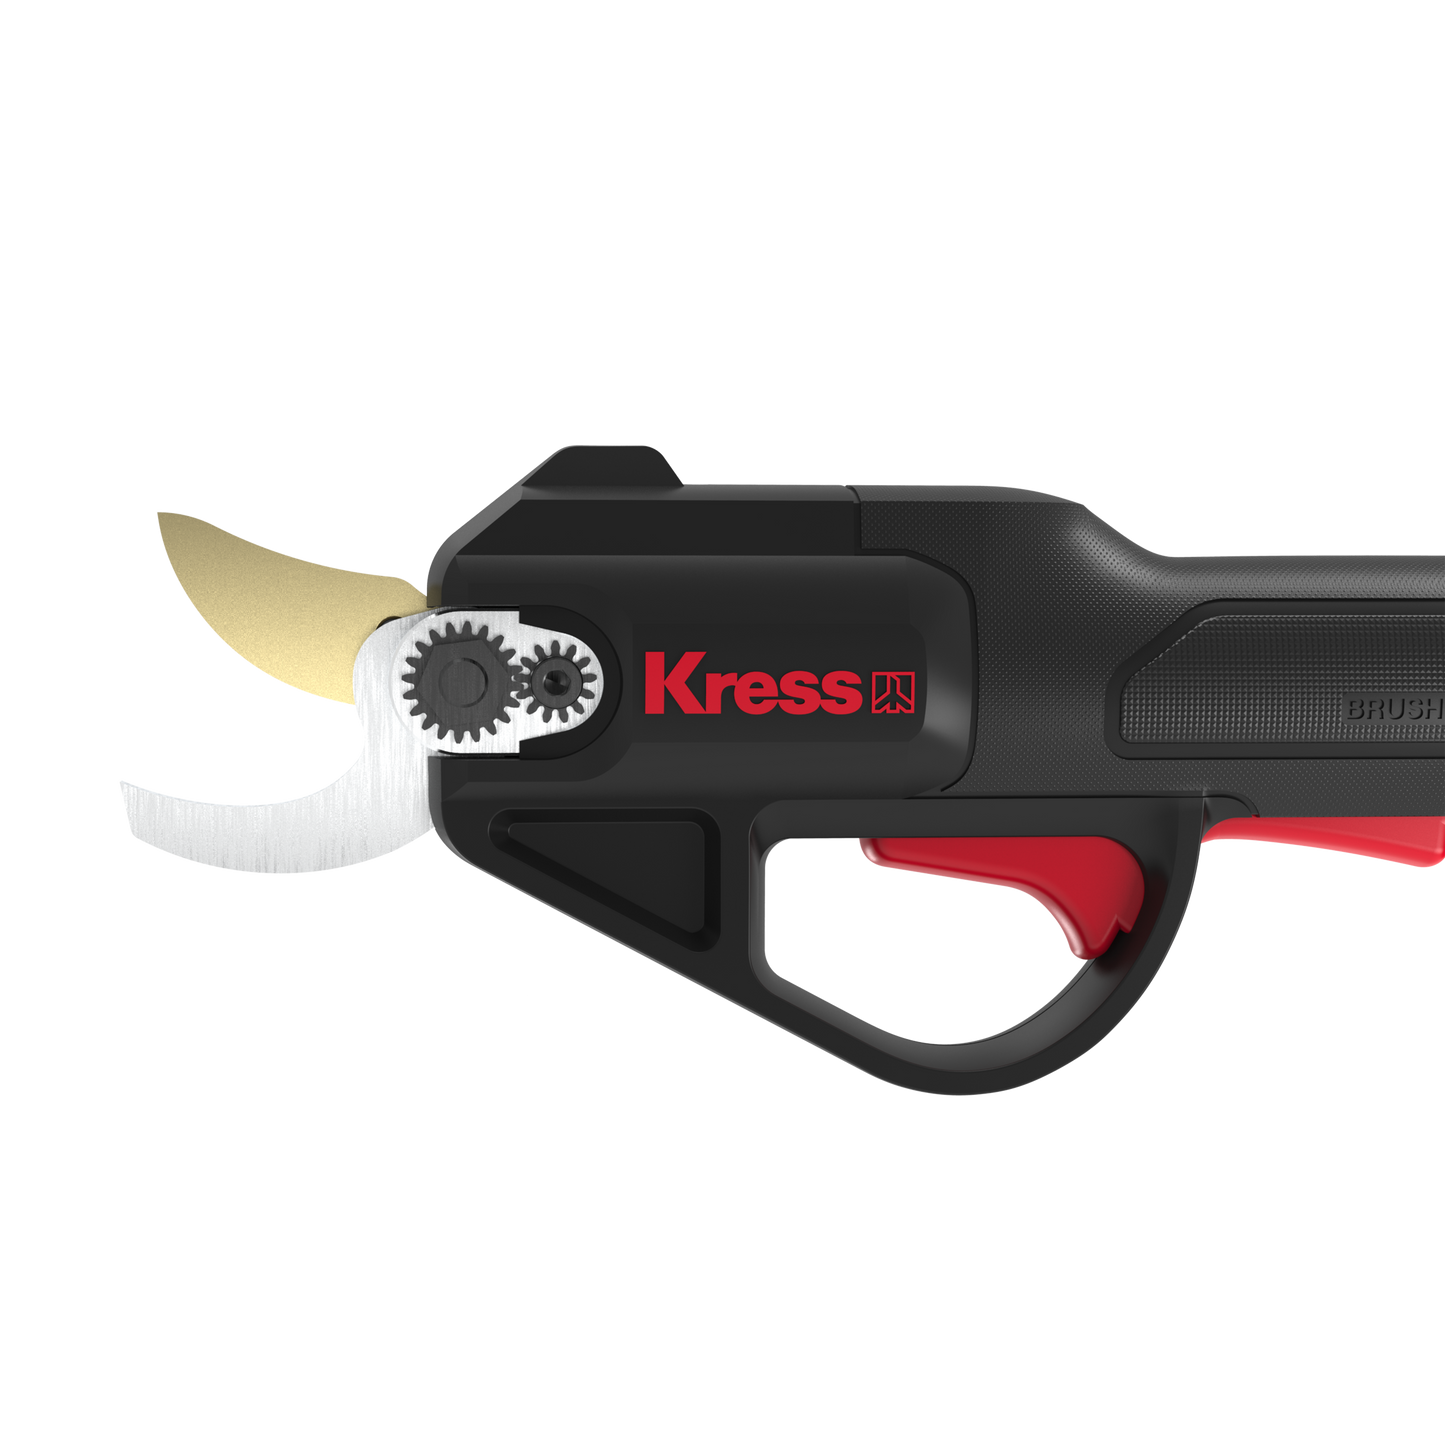 Forbici Cordless Kress 20 V 25 mm per potatura KG340.9 - Attrezzo nudo - senza batteria e caricabatteria